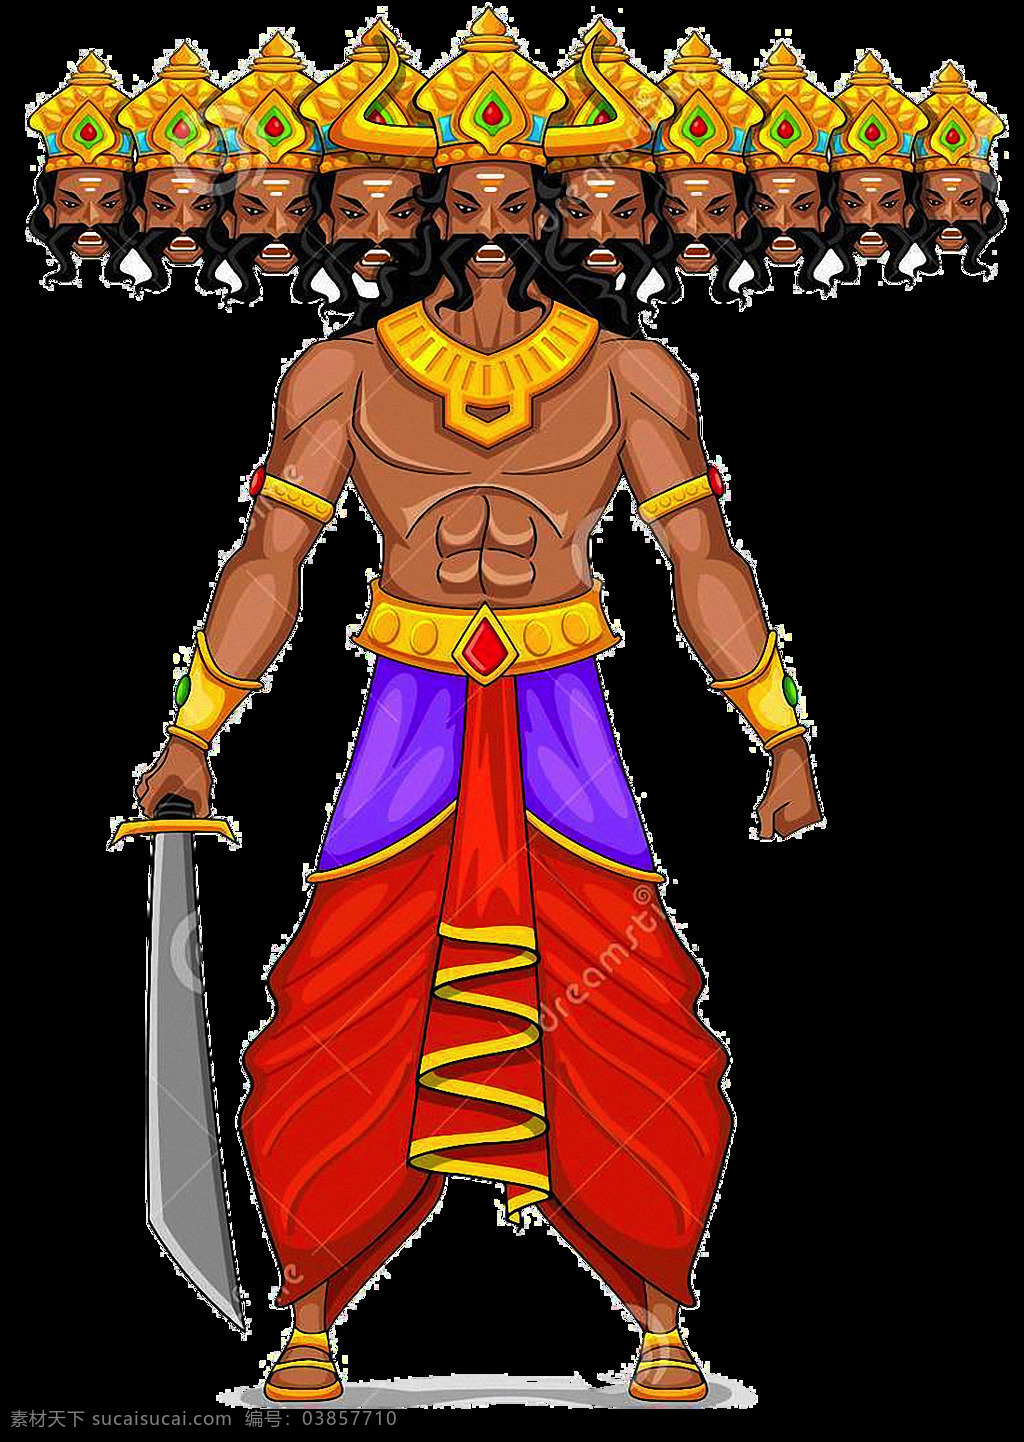 提 刀 罗波 免 抠 透明 图 层 提刀的罗波那 ravana 印度神 印度教神 印度神话人物 宗教神话 宗教神 印度教的神 印度教 神话 人物 拉瓦那 多头恶魔怪物 多头妖魔